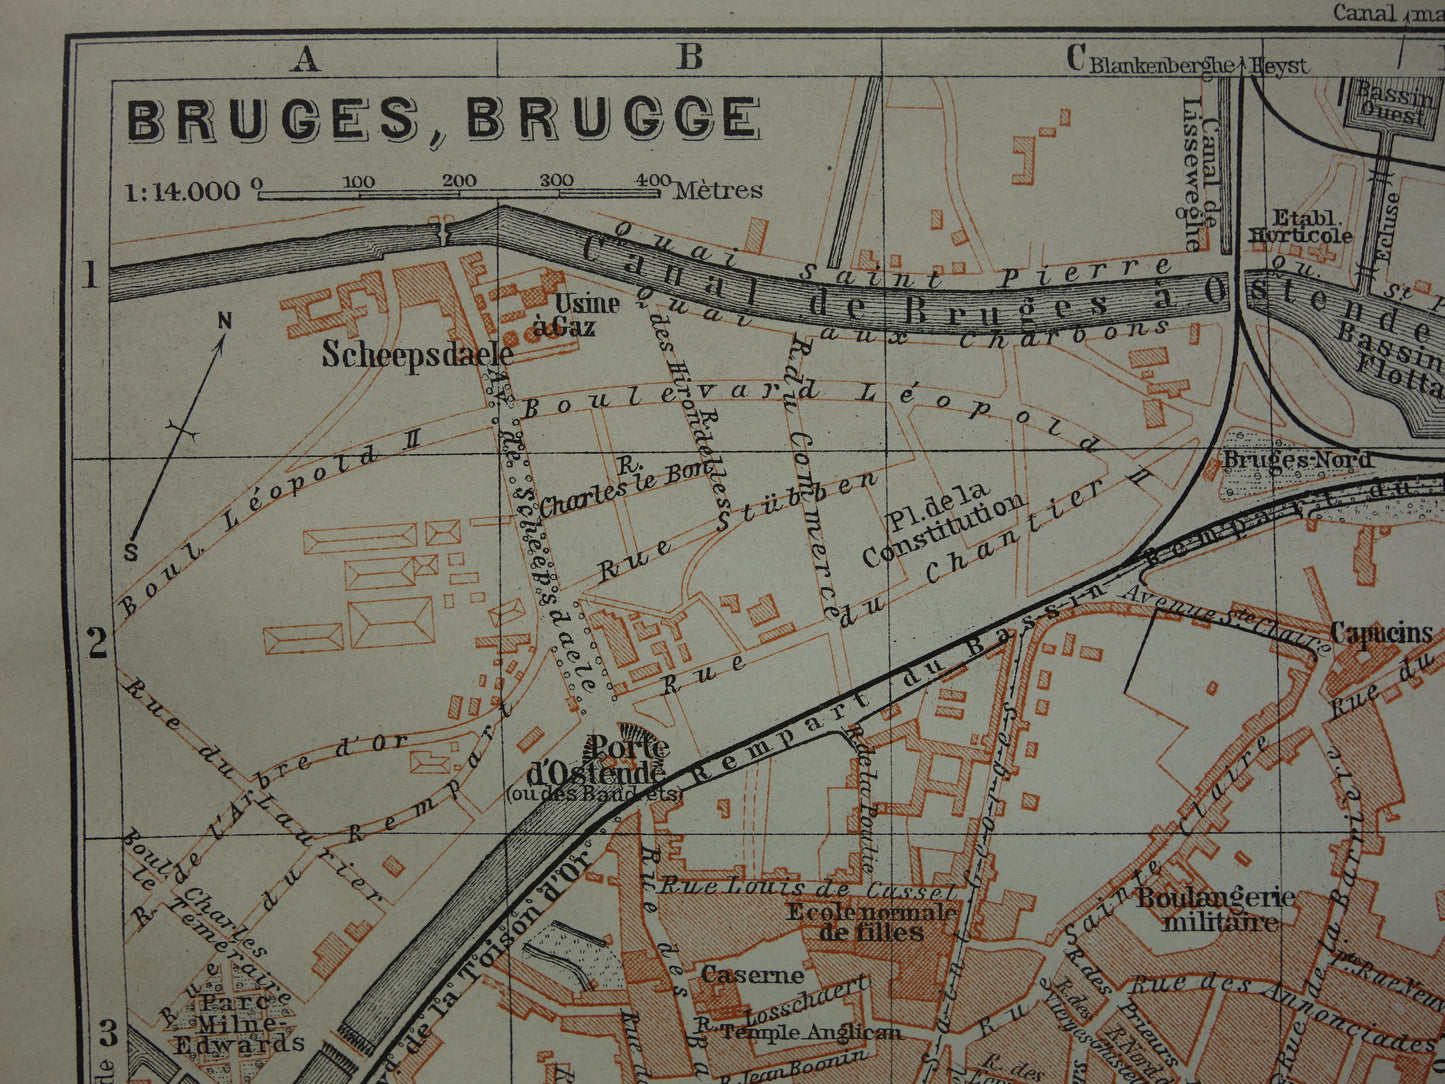 BRUGGE oude kaart van Brugge België uit 1910 kleine originele antieke plattegrond landkaart